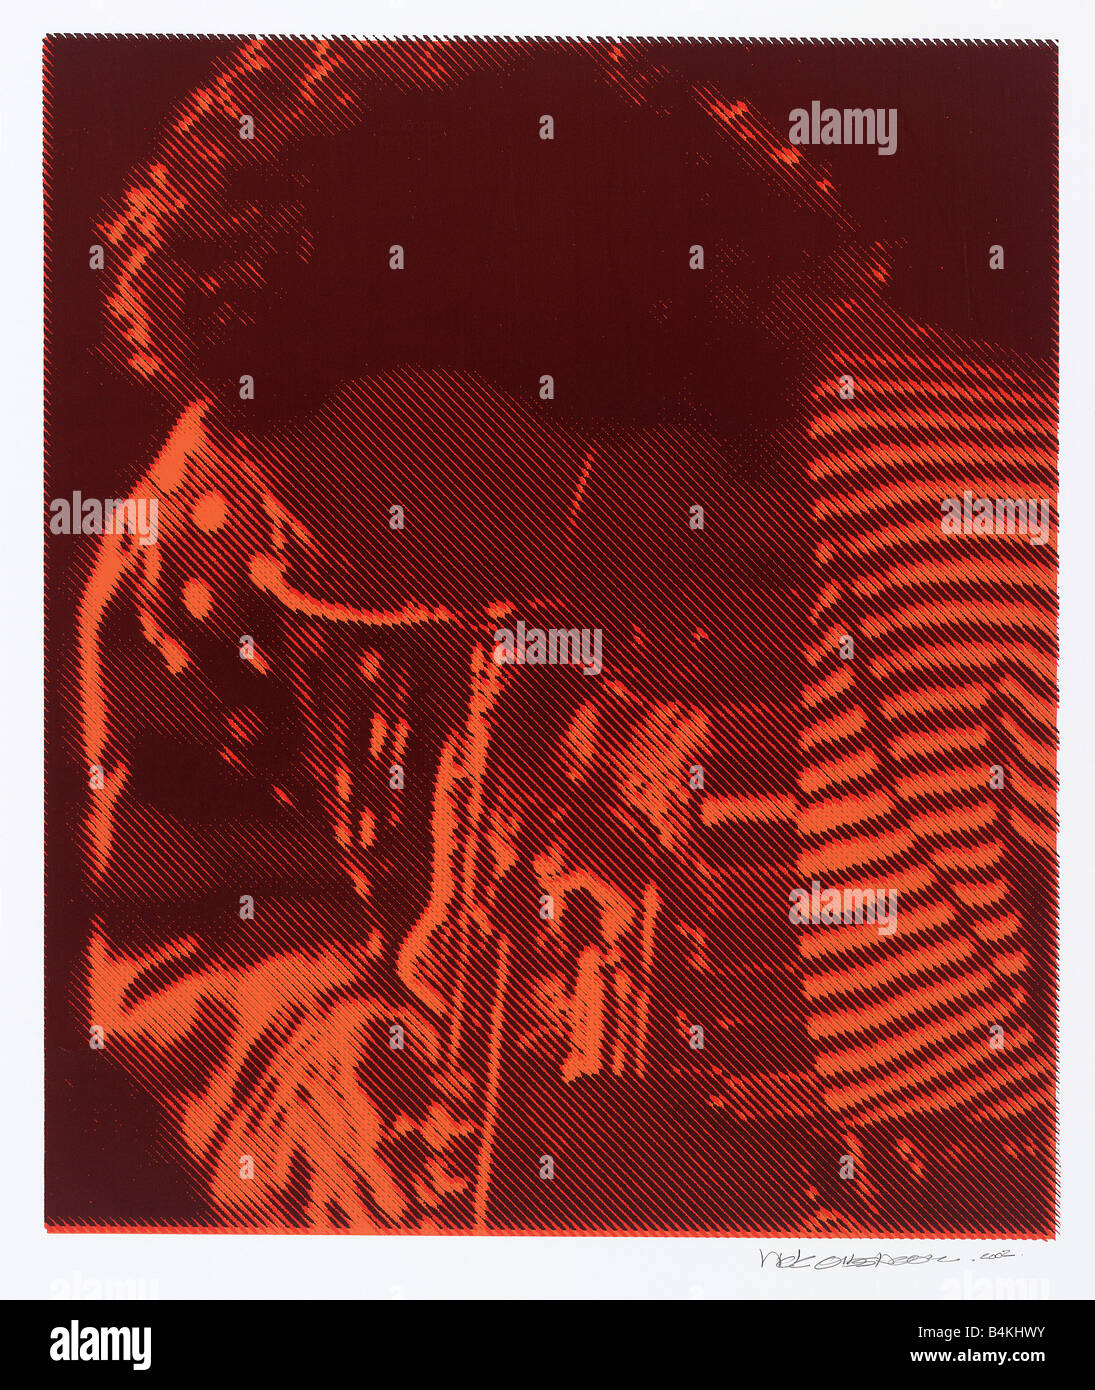 Miles Davis, trompettiste de jazz américain, 1926-1991, compositeur, chef d'orchestre,sérigraphie faite d'une photo, par nick oudshoorn Banque D'Images